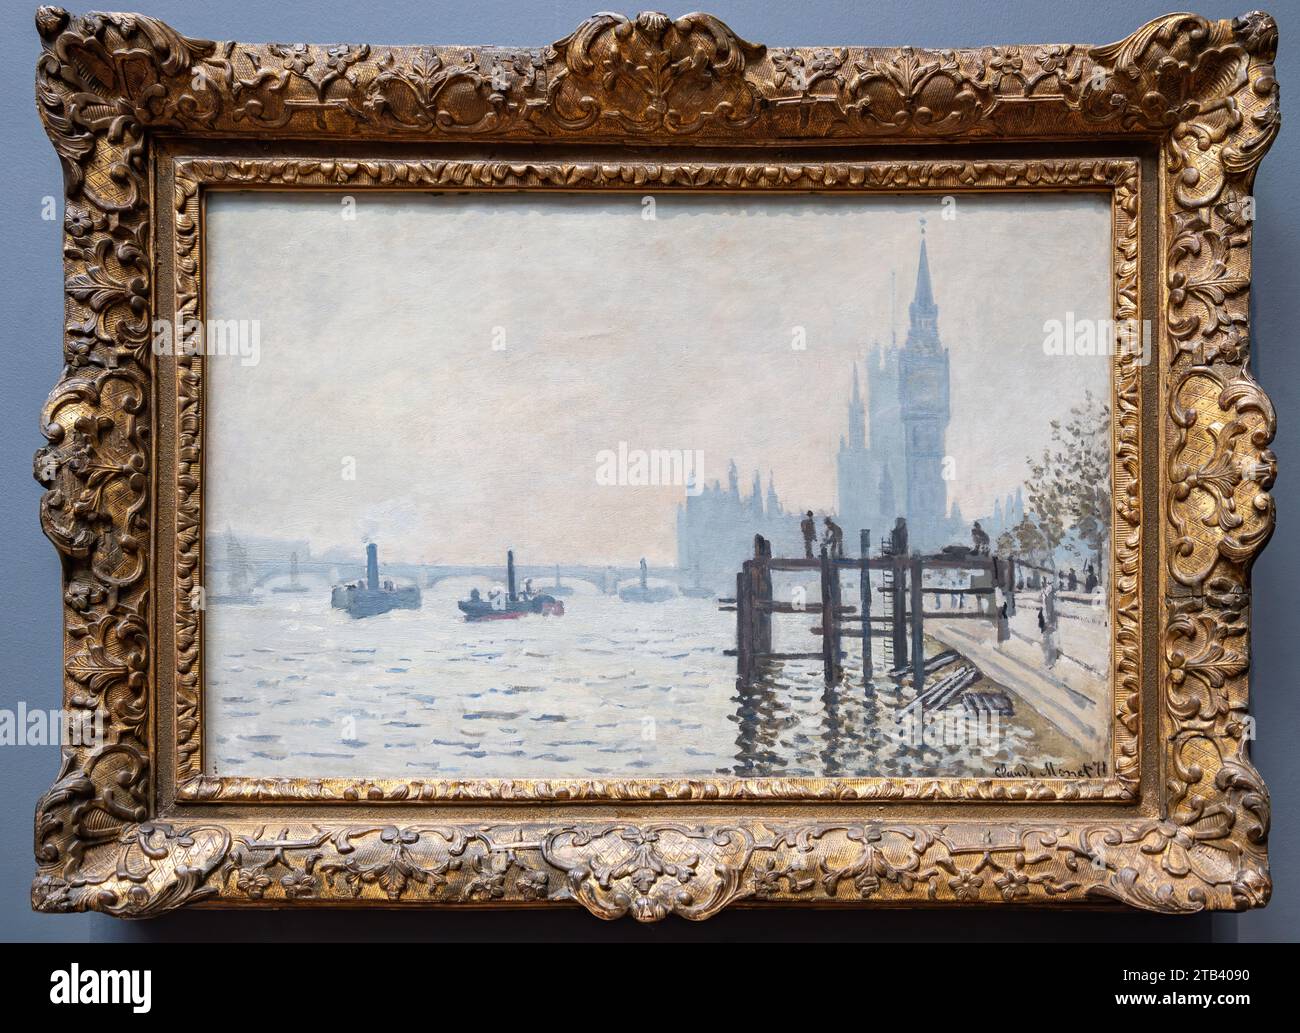 Londres, Royaume-Uni - 19 mai 2023 : la Tamise au-dessous de Westminster par l'impressionniste français Claude Monet, exposé à la National Gallery de Londres Banque D'Images